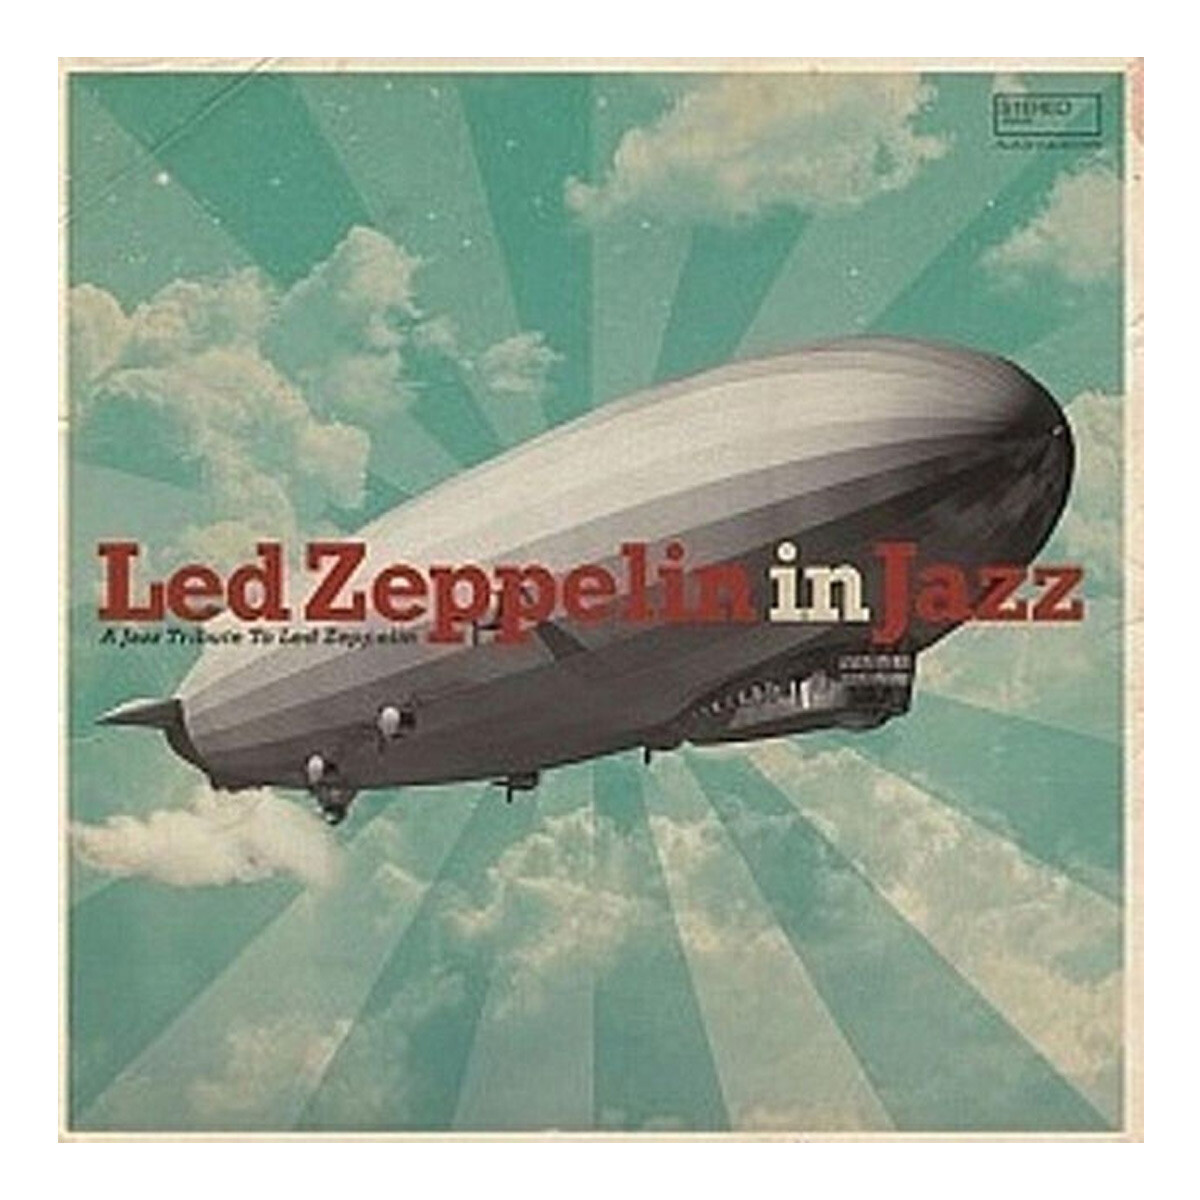 Varios - Led Zeppelin In Jazz / - Vinilo 